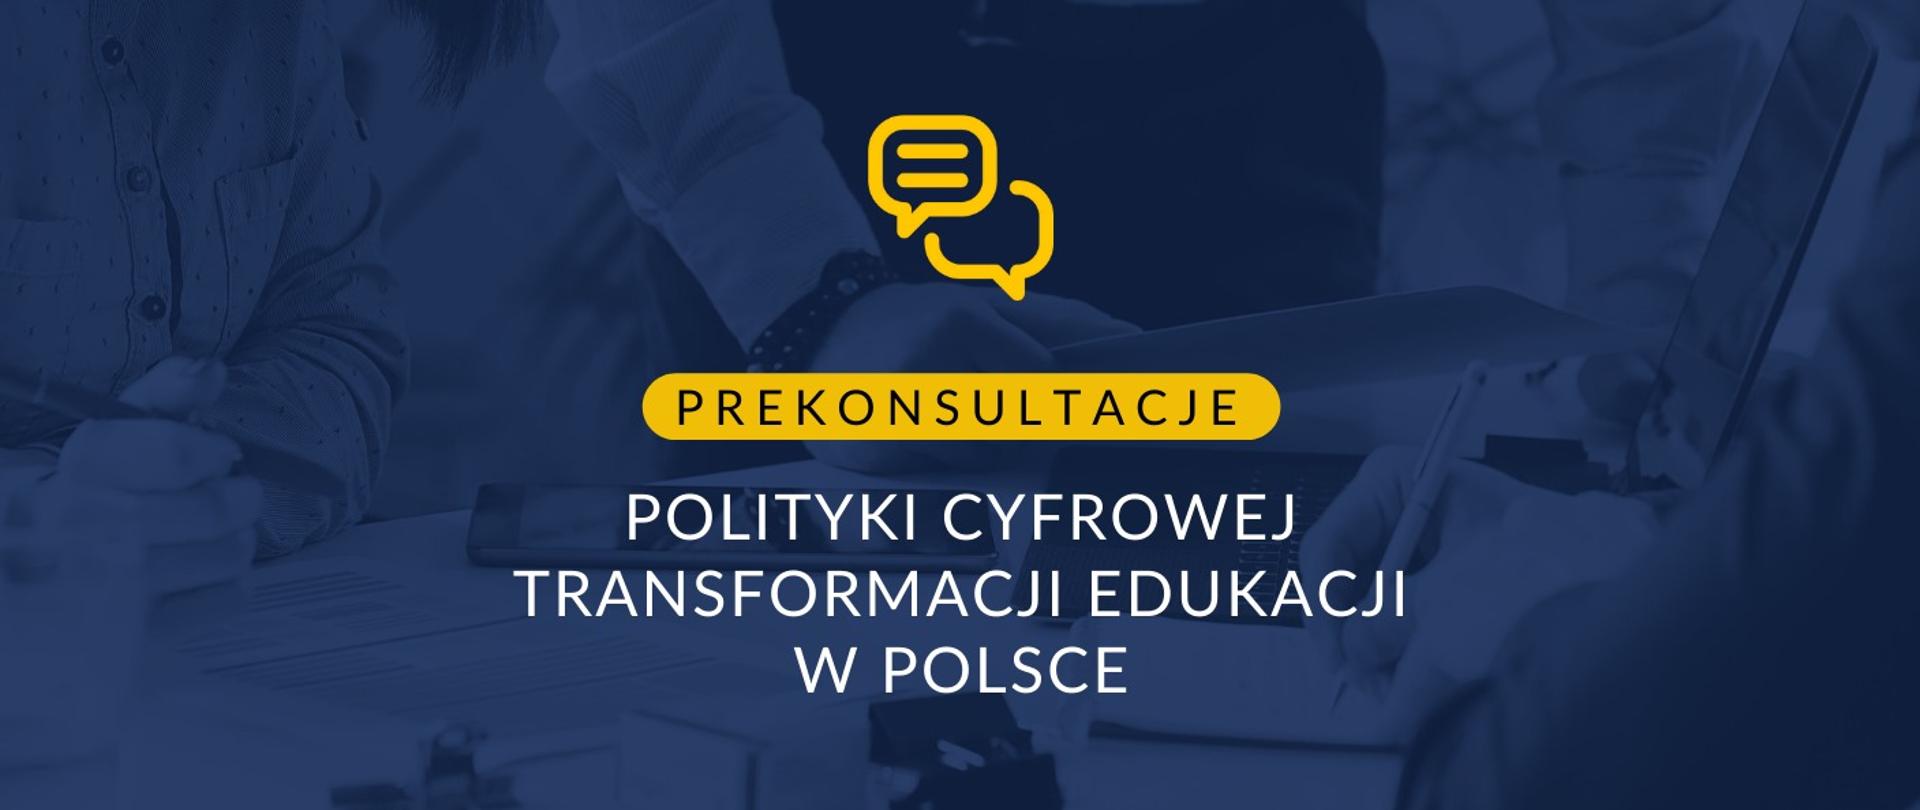 Grafika - na niebieskim tle napis Prekonsultacje polityki cyfrowej transformacji edukacji w Polsce.